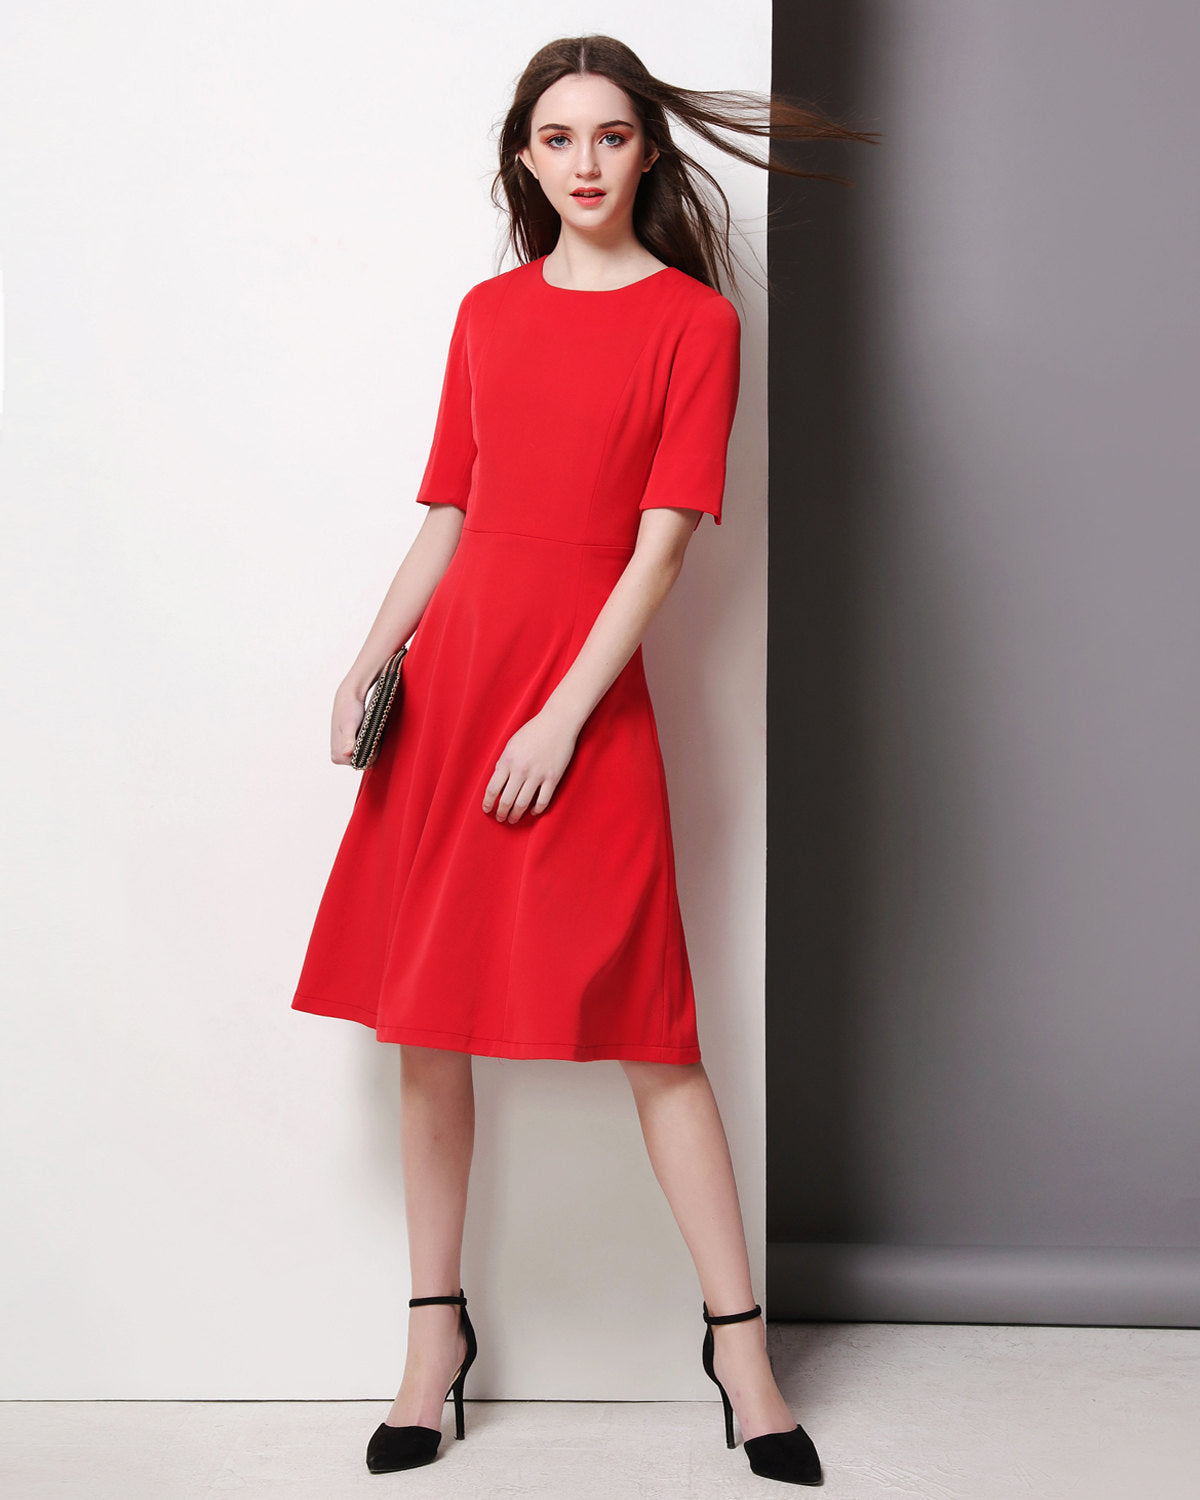 Custom made dress Swing dress 50's dress Duchess of Cambridge dress Kate Middleton inspired red skater dress Dress eugenia red dress